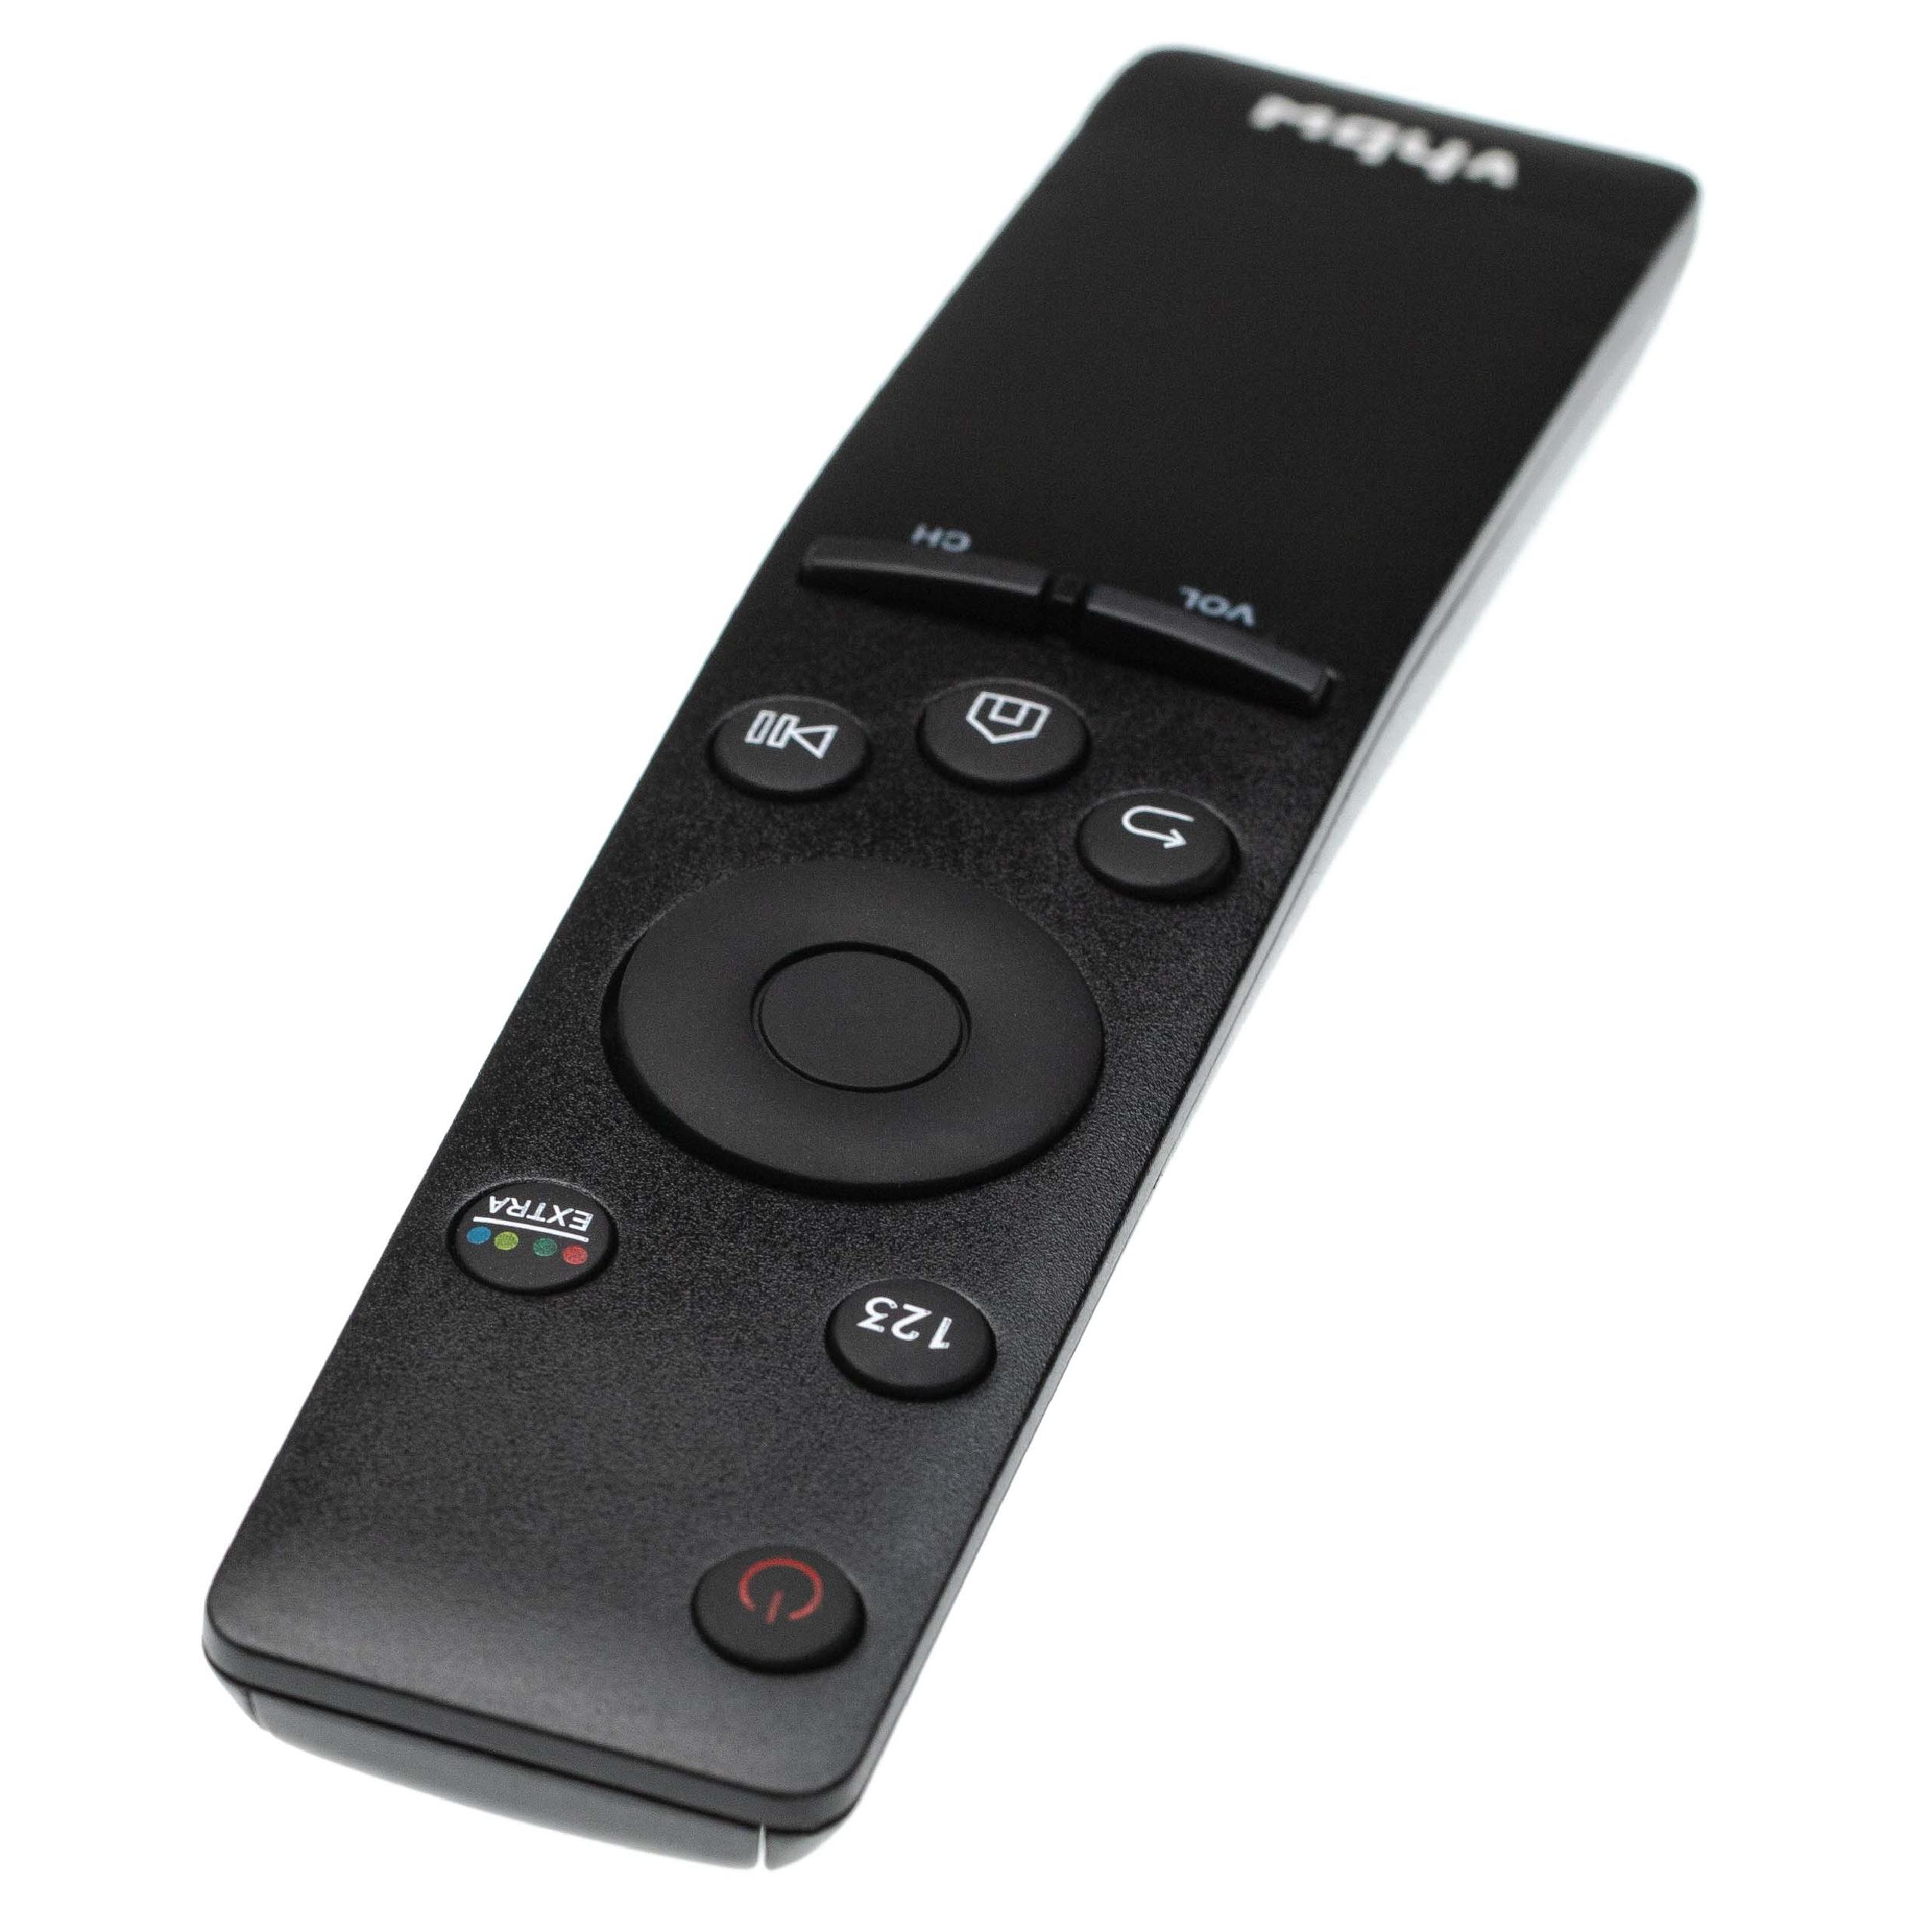 Telecomando sostituisce Samsung BN59-01259E, BN59-01259D, BN59-01260A, BN59-01259B per TV Samsung 